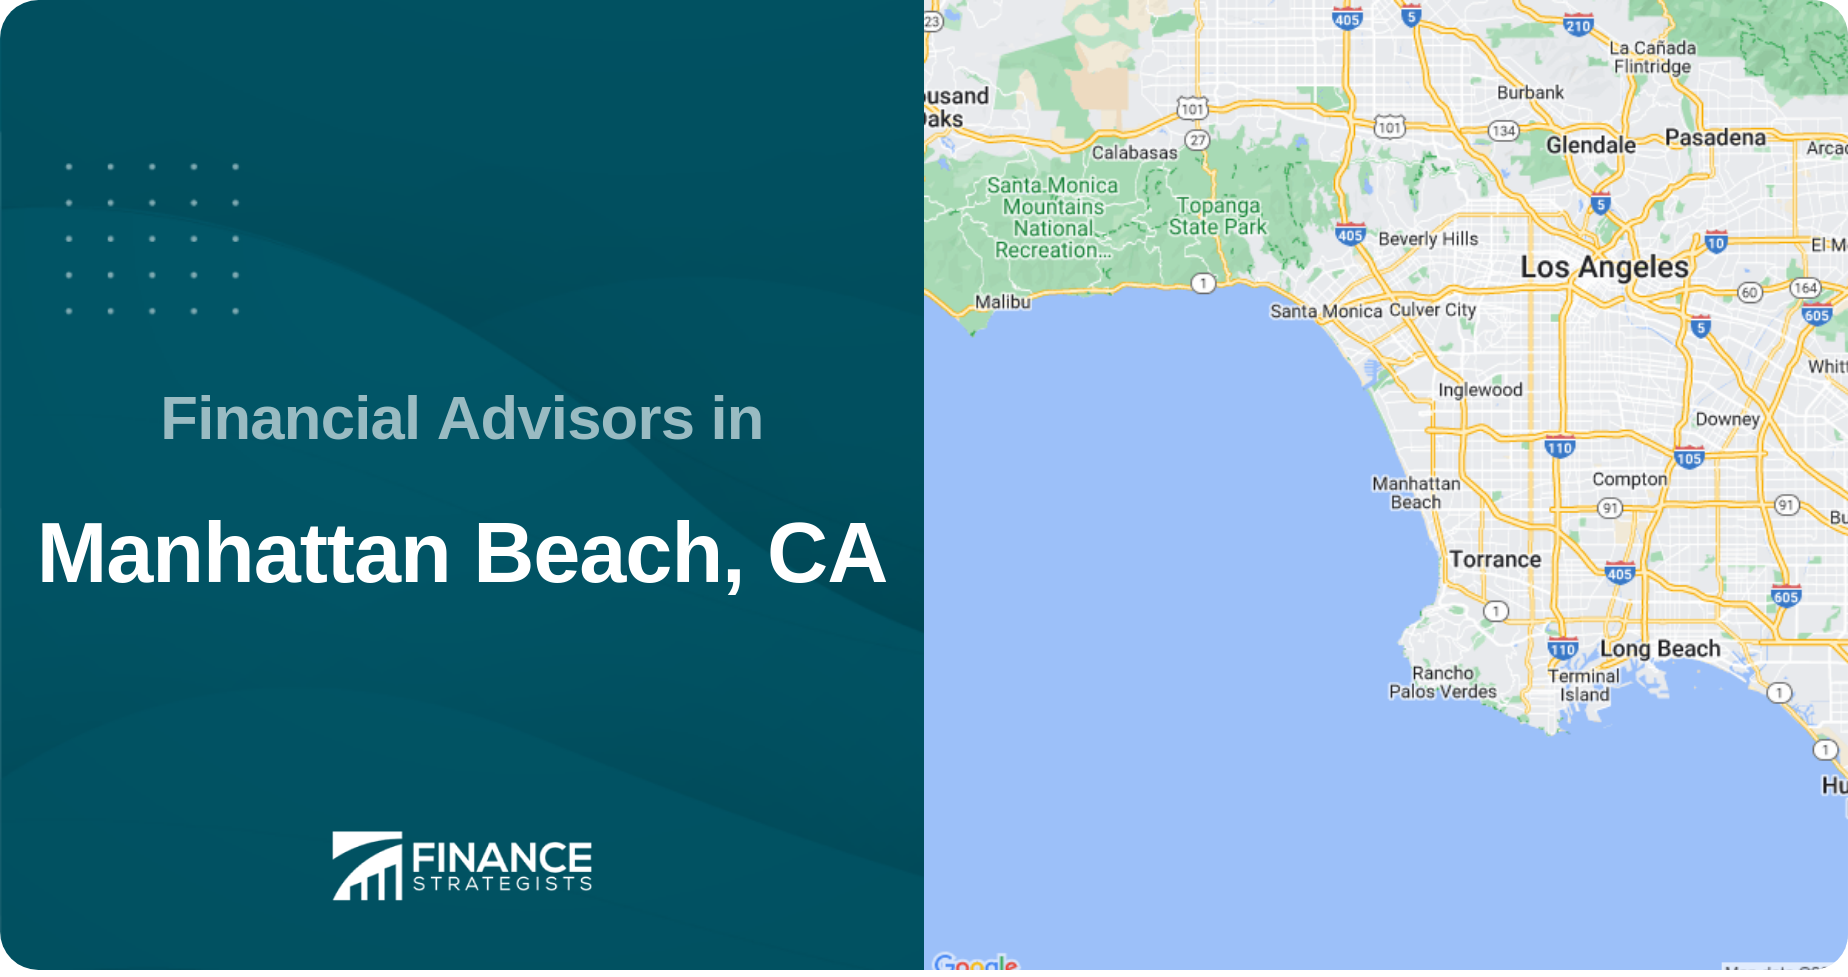 Financial Advisors in Manhattan Beach, CA